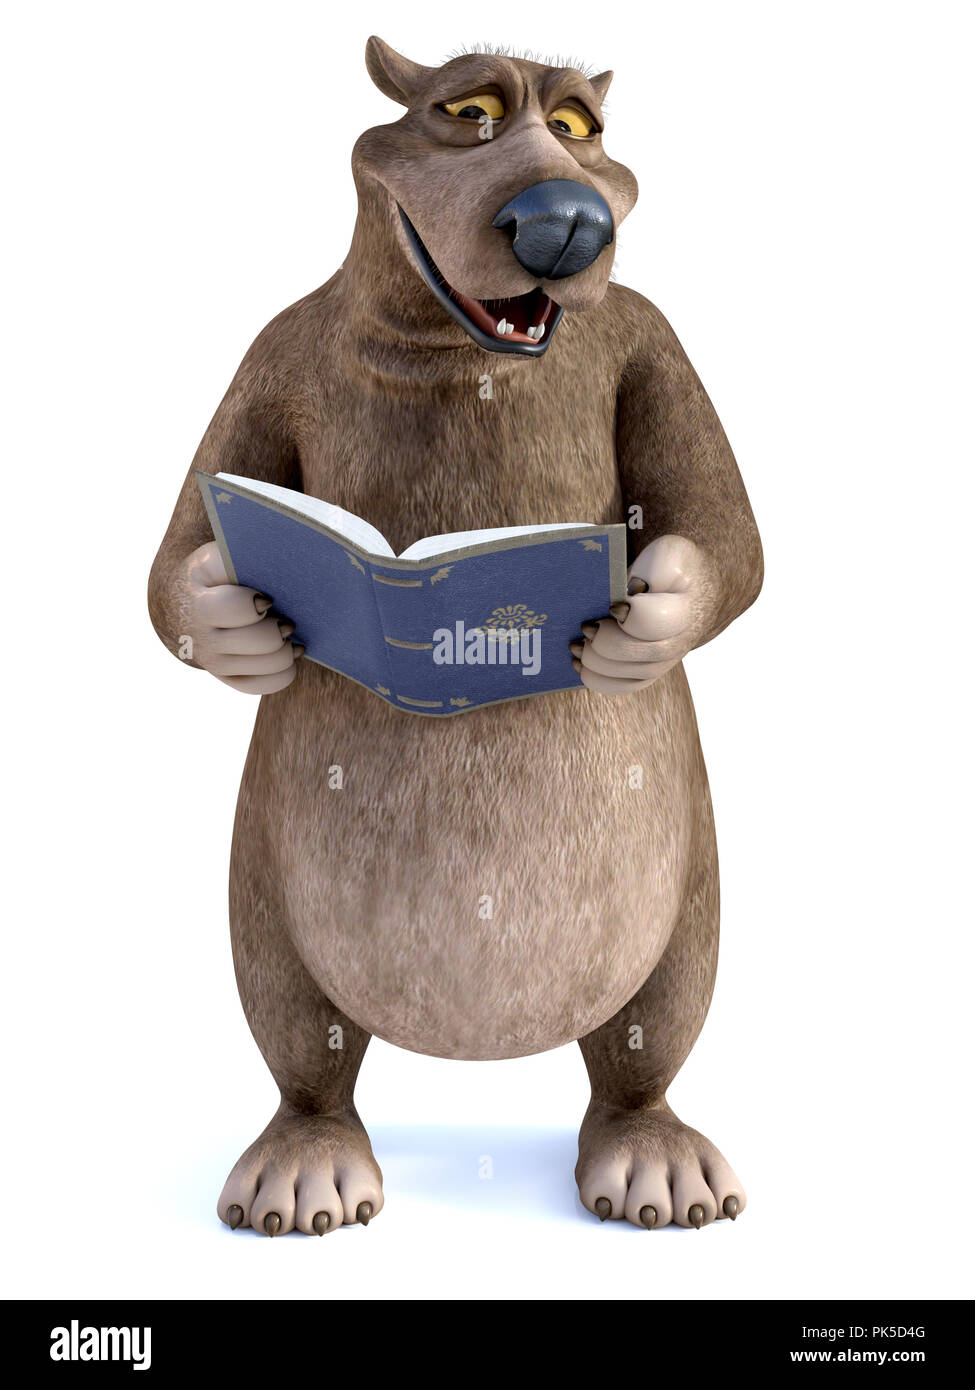 Le rendu 3D d'un charmant sourire cartoon bear tenant un livre dans sa main qu'il lit. C'est l'heure du conte ! Arrière-plan blanc. Banque D'Images